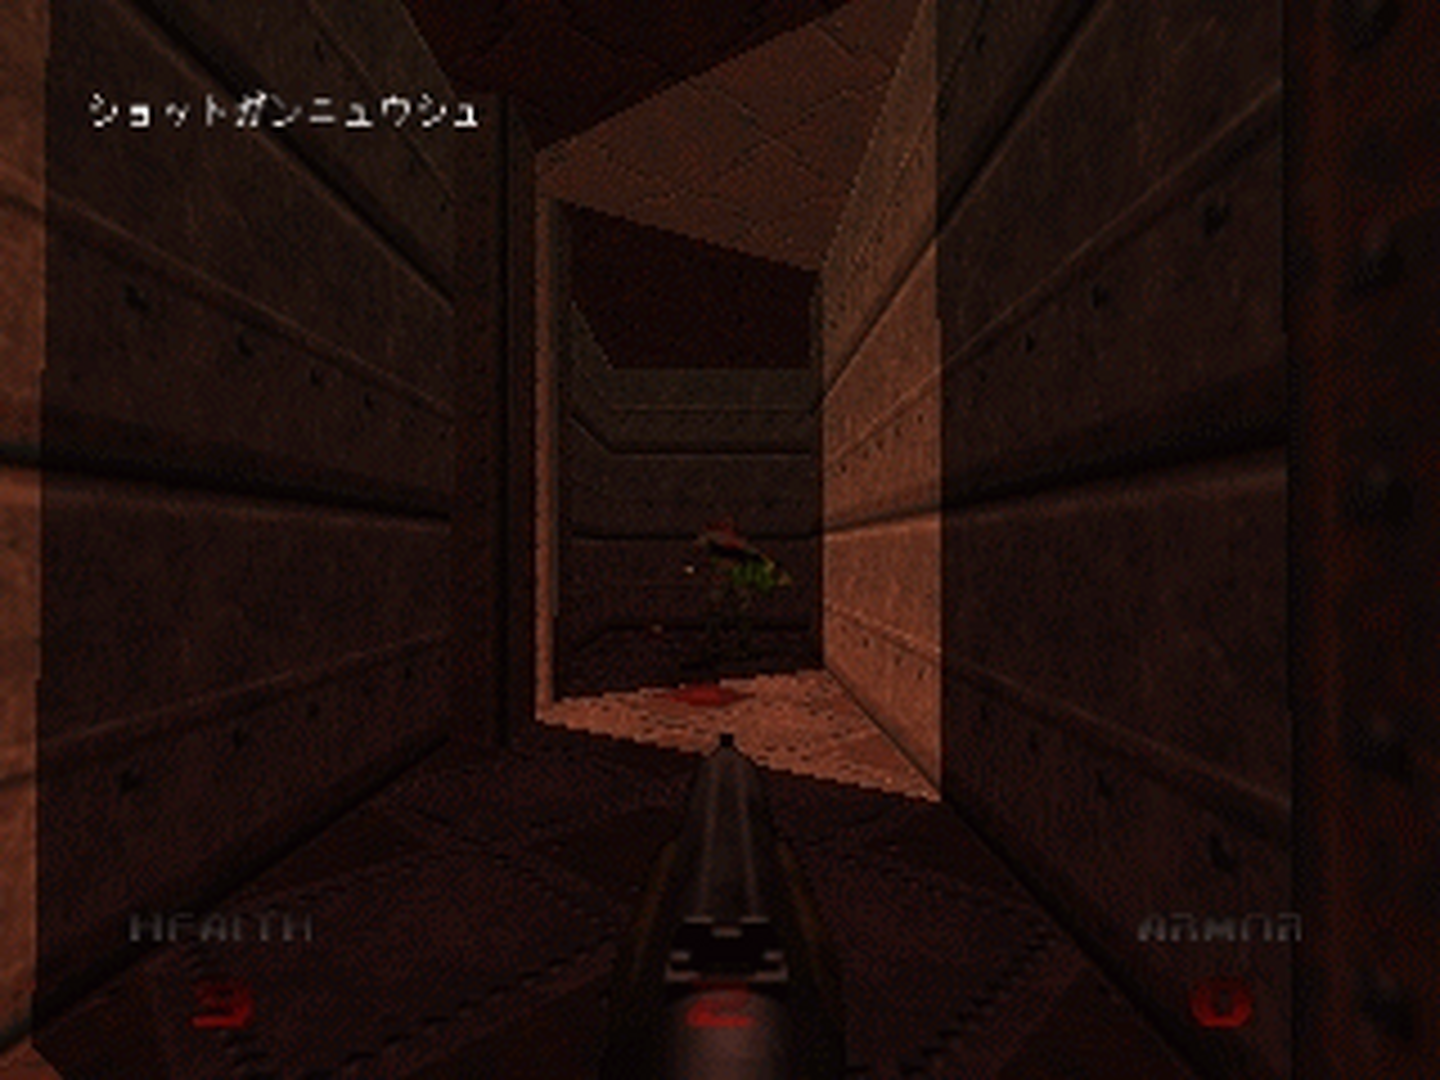 N64 GameBase Doom_64_(J) GameBank 1997